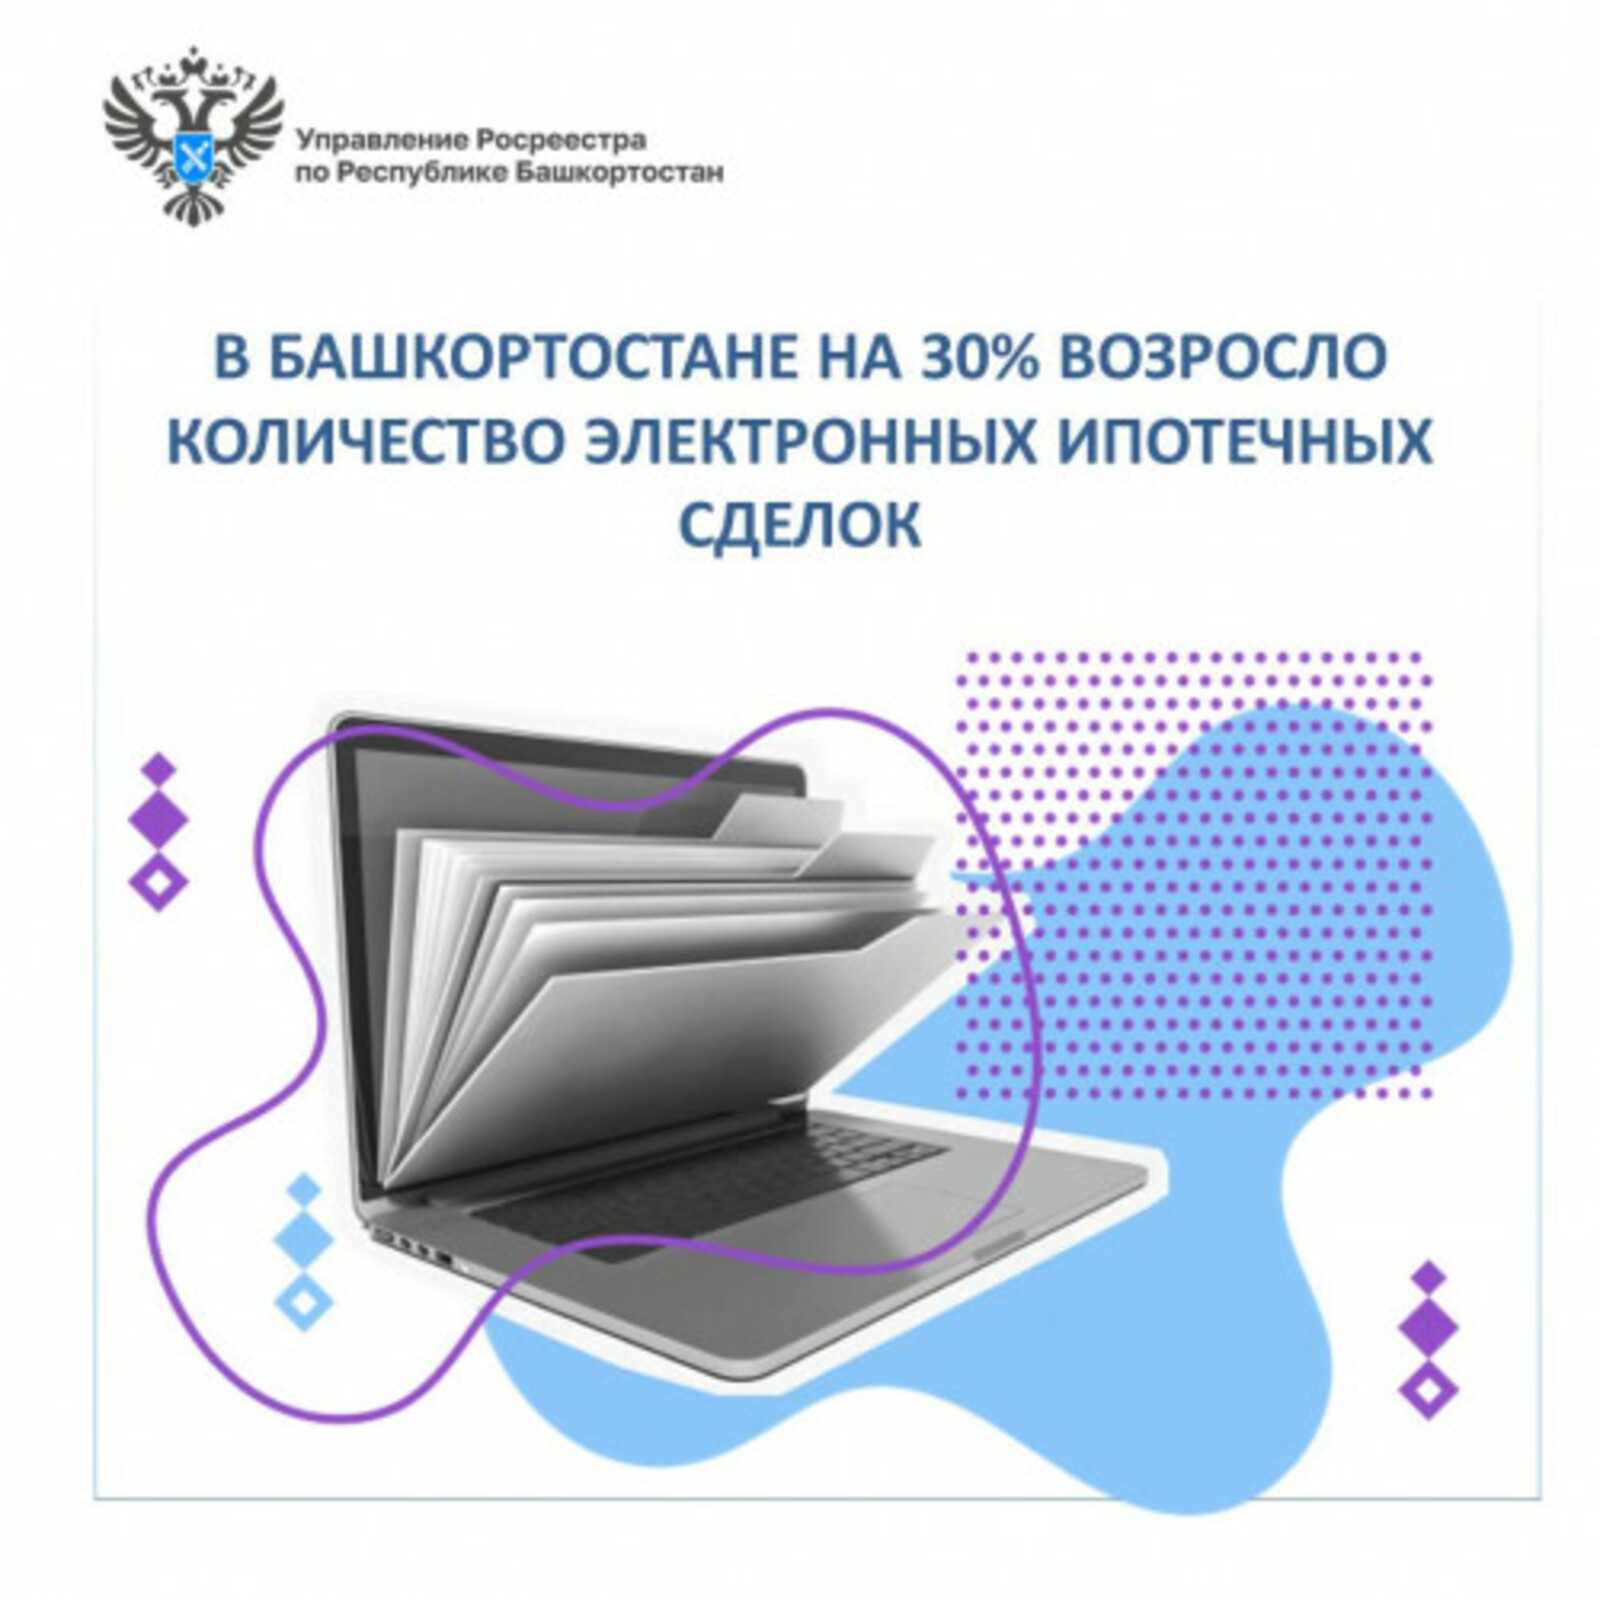 пресс-служба правительства РБ В Башкирии число электронных ипотечных сделок увеличилось до 80 тысяч